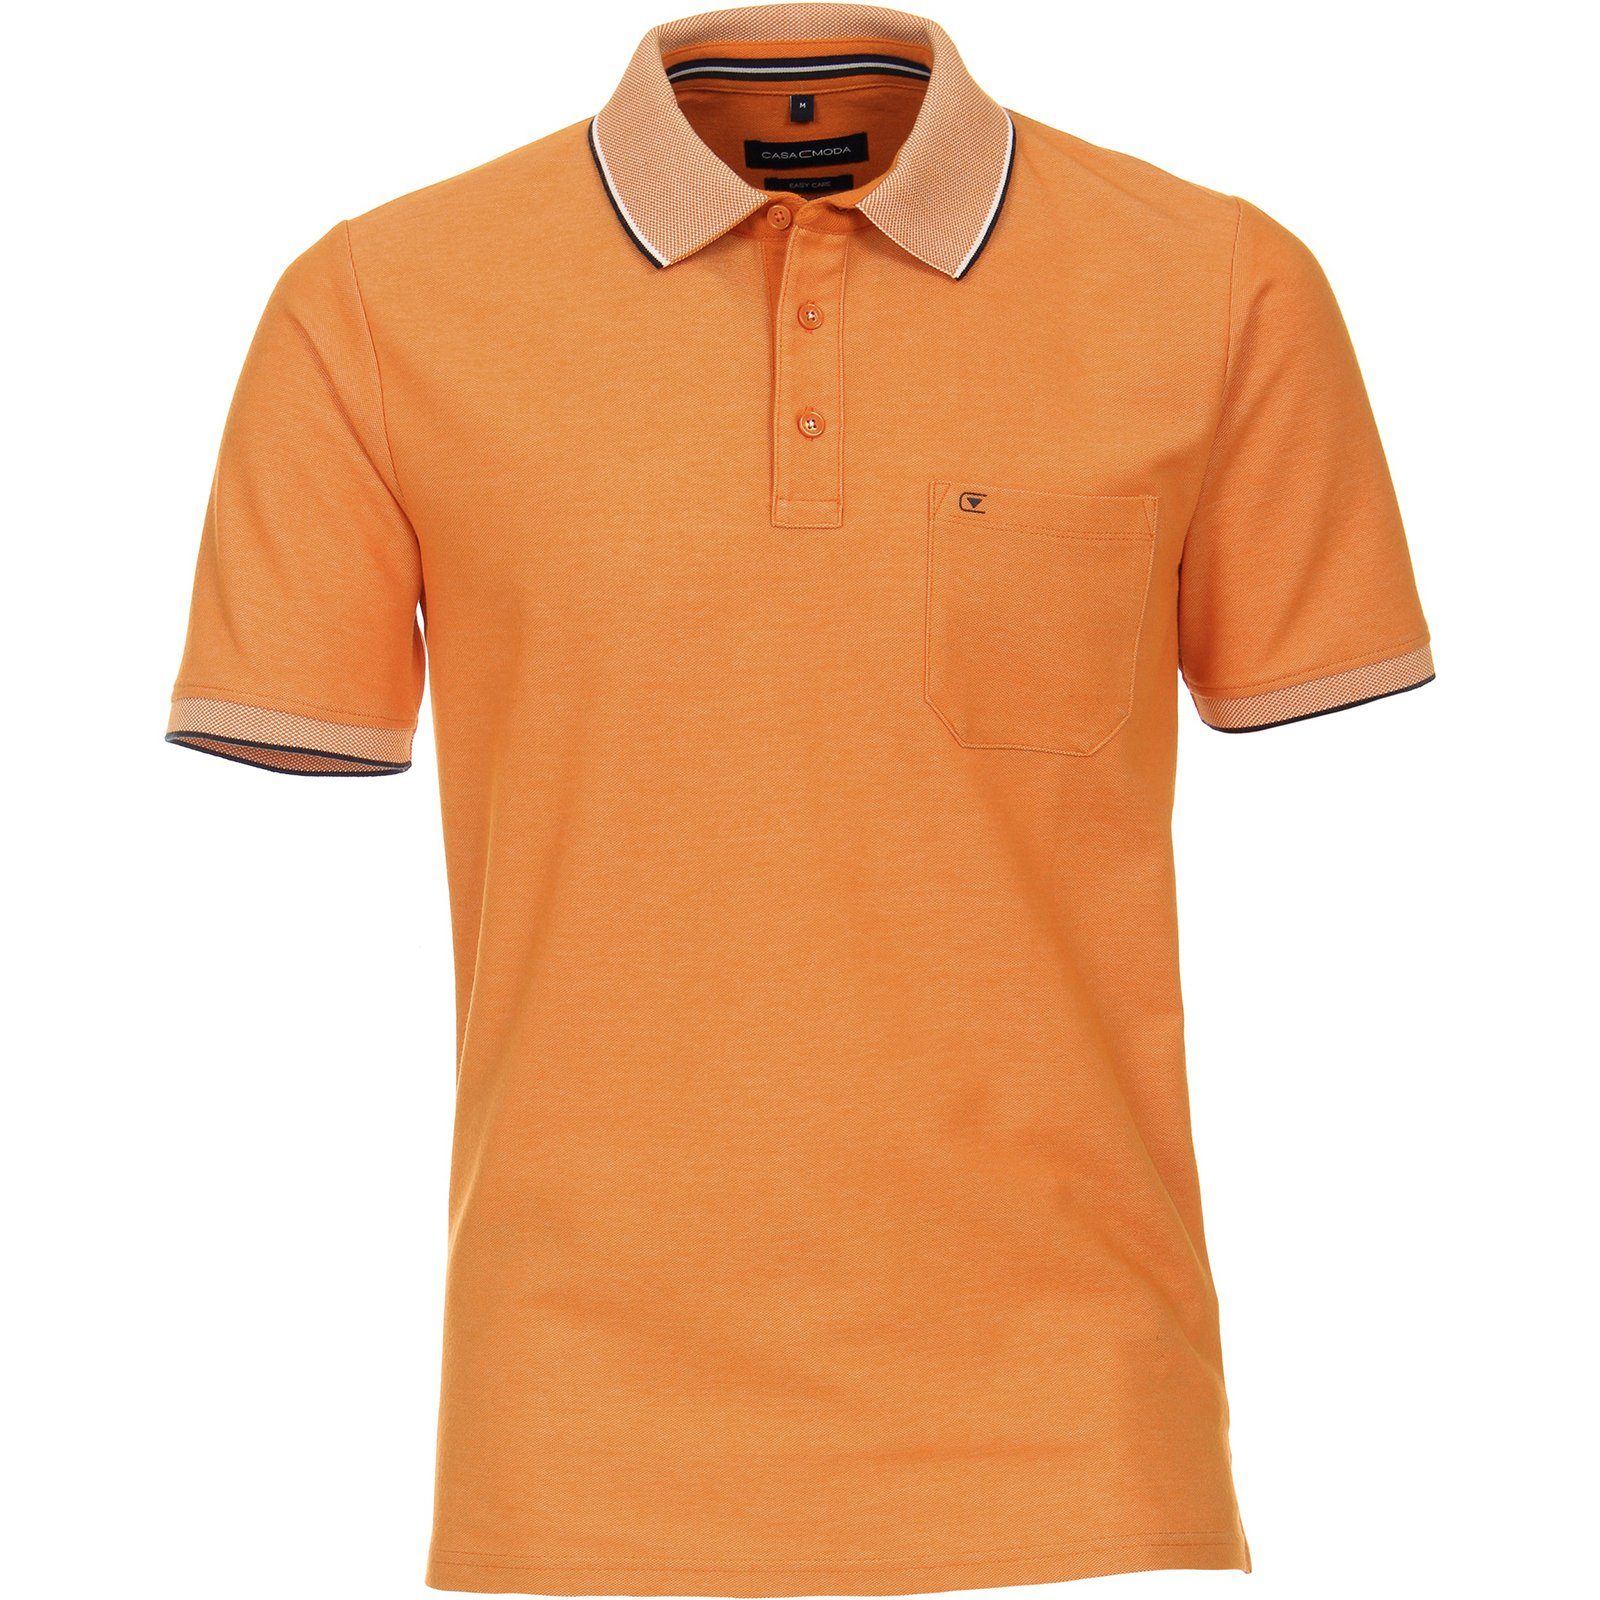 Poloshirt Größen CASAMODA melange easy Herren orange care CasaModa Poloshirt Große